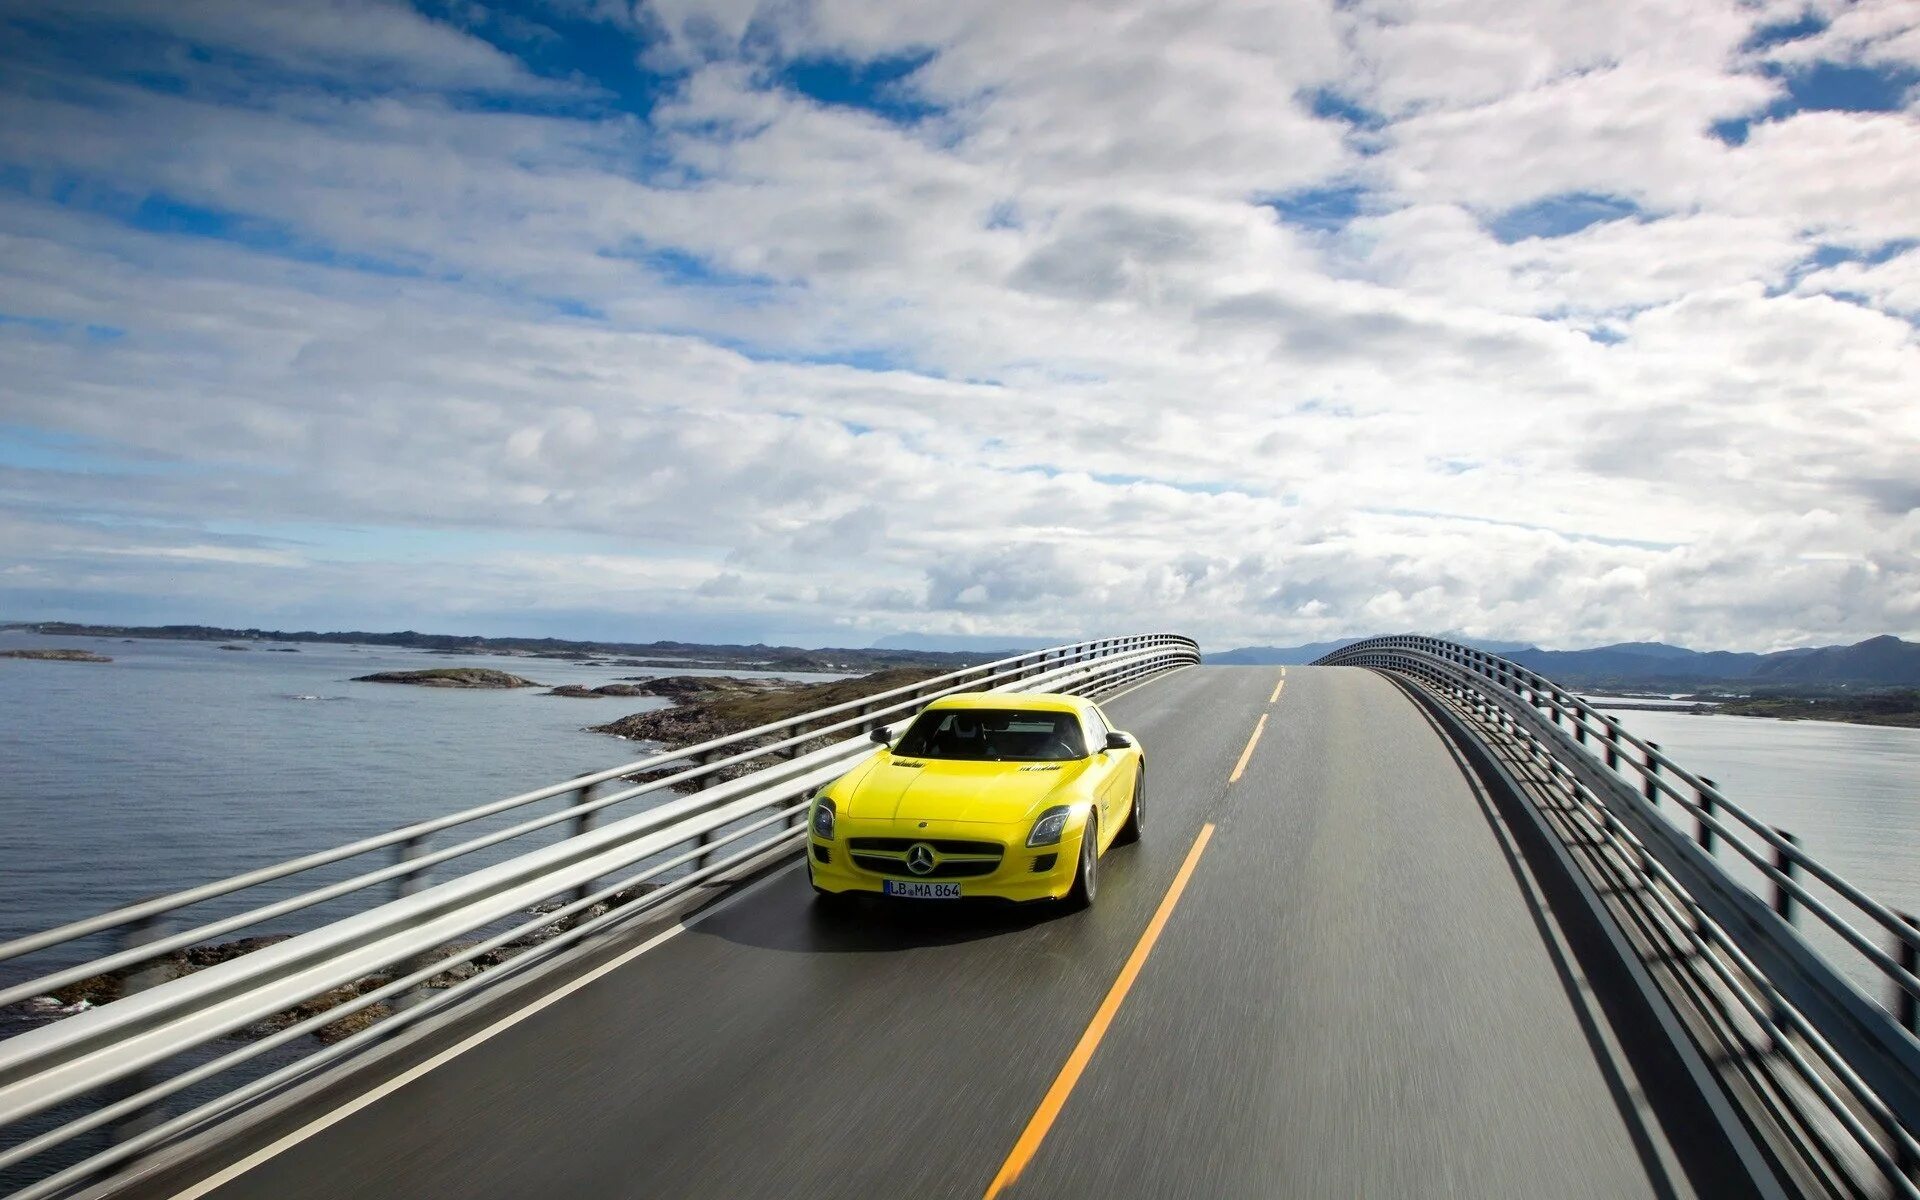 Машина едет фото. Мост в машине. Машина едет по дороге. Трасса с машинами. Машина едет по мосту.